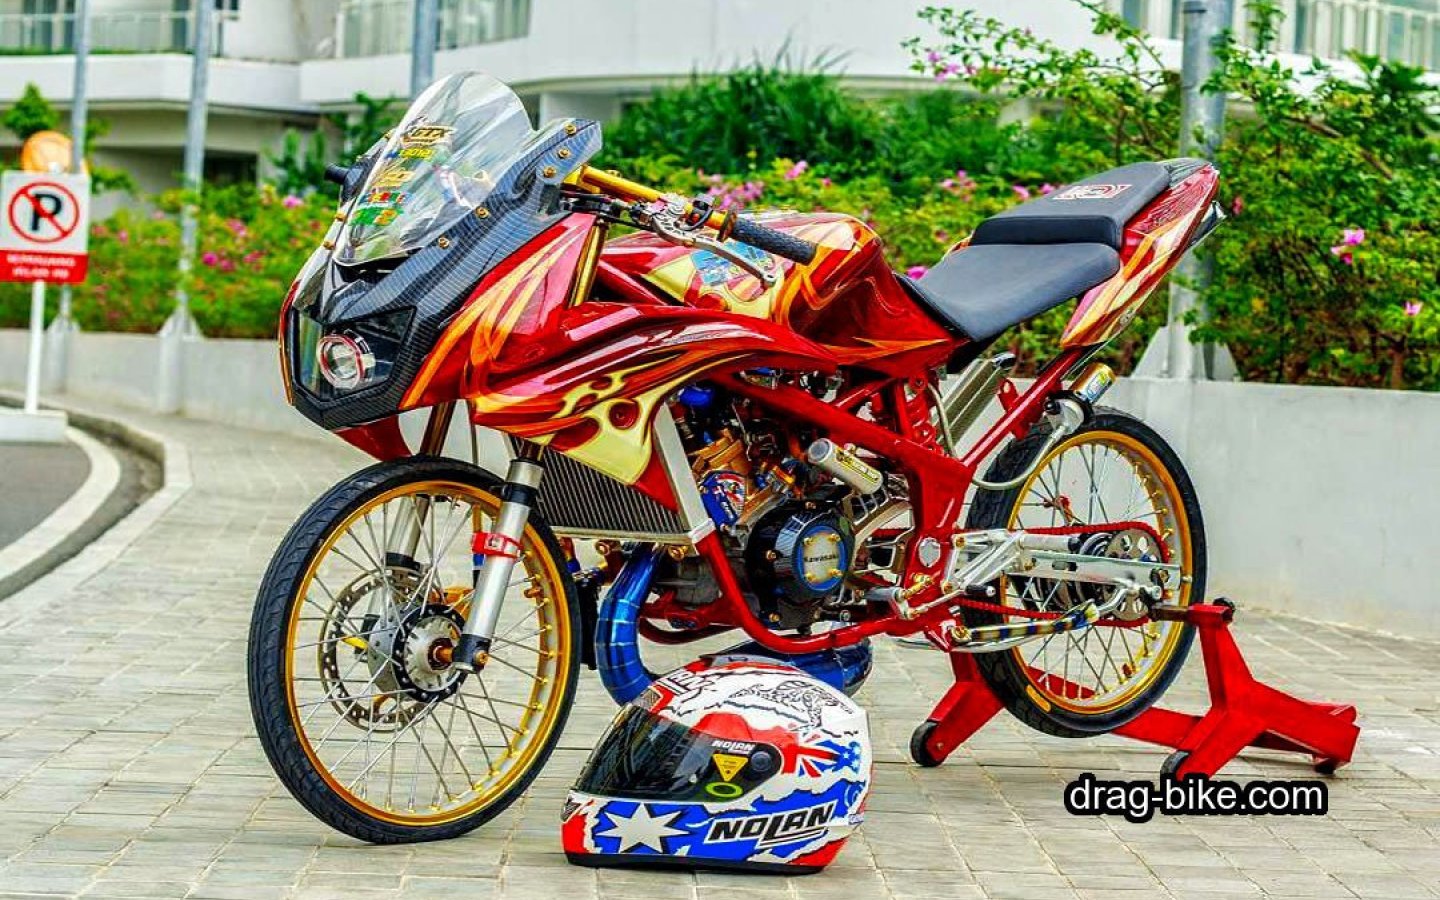 papier peint drag ninja,véhicule terrestre,véhicule,moto,véhicule à moteur,course de moto